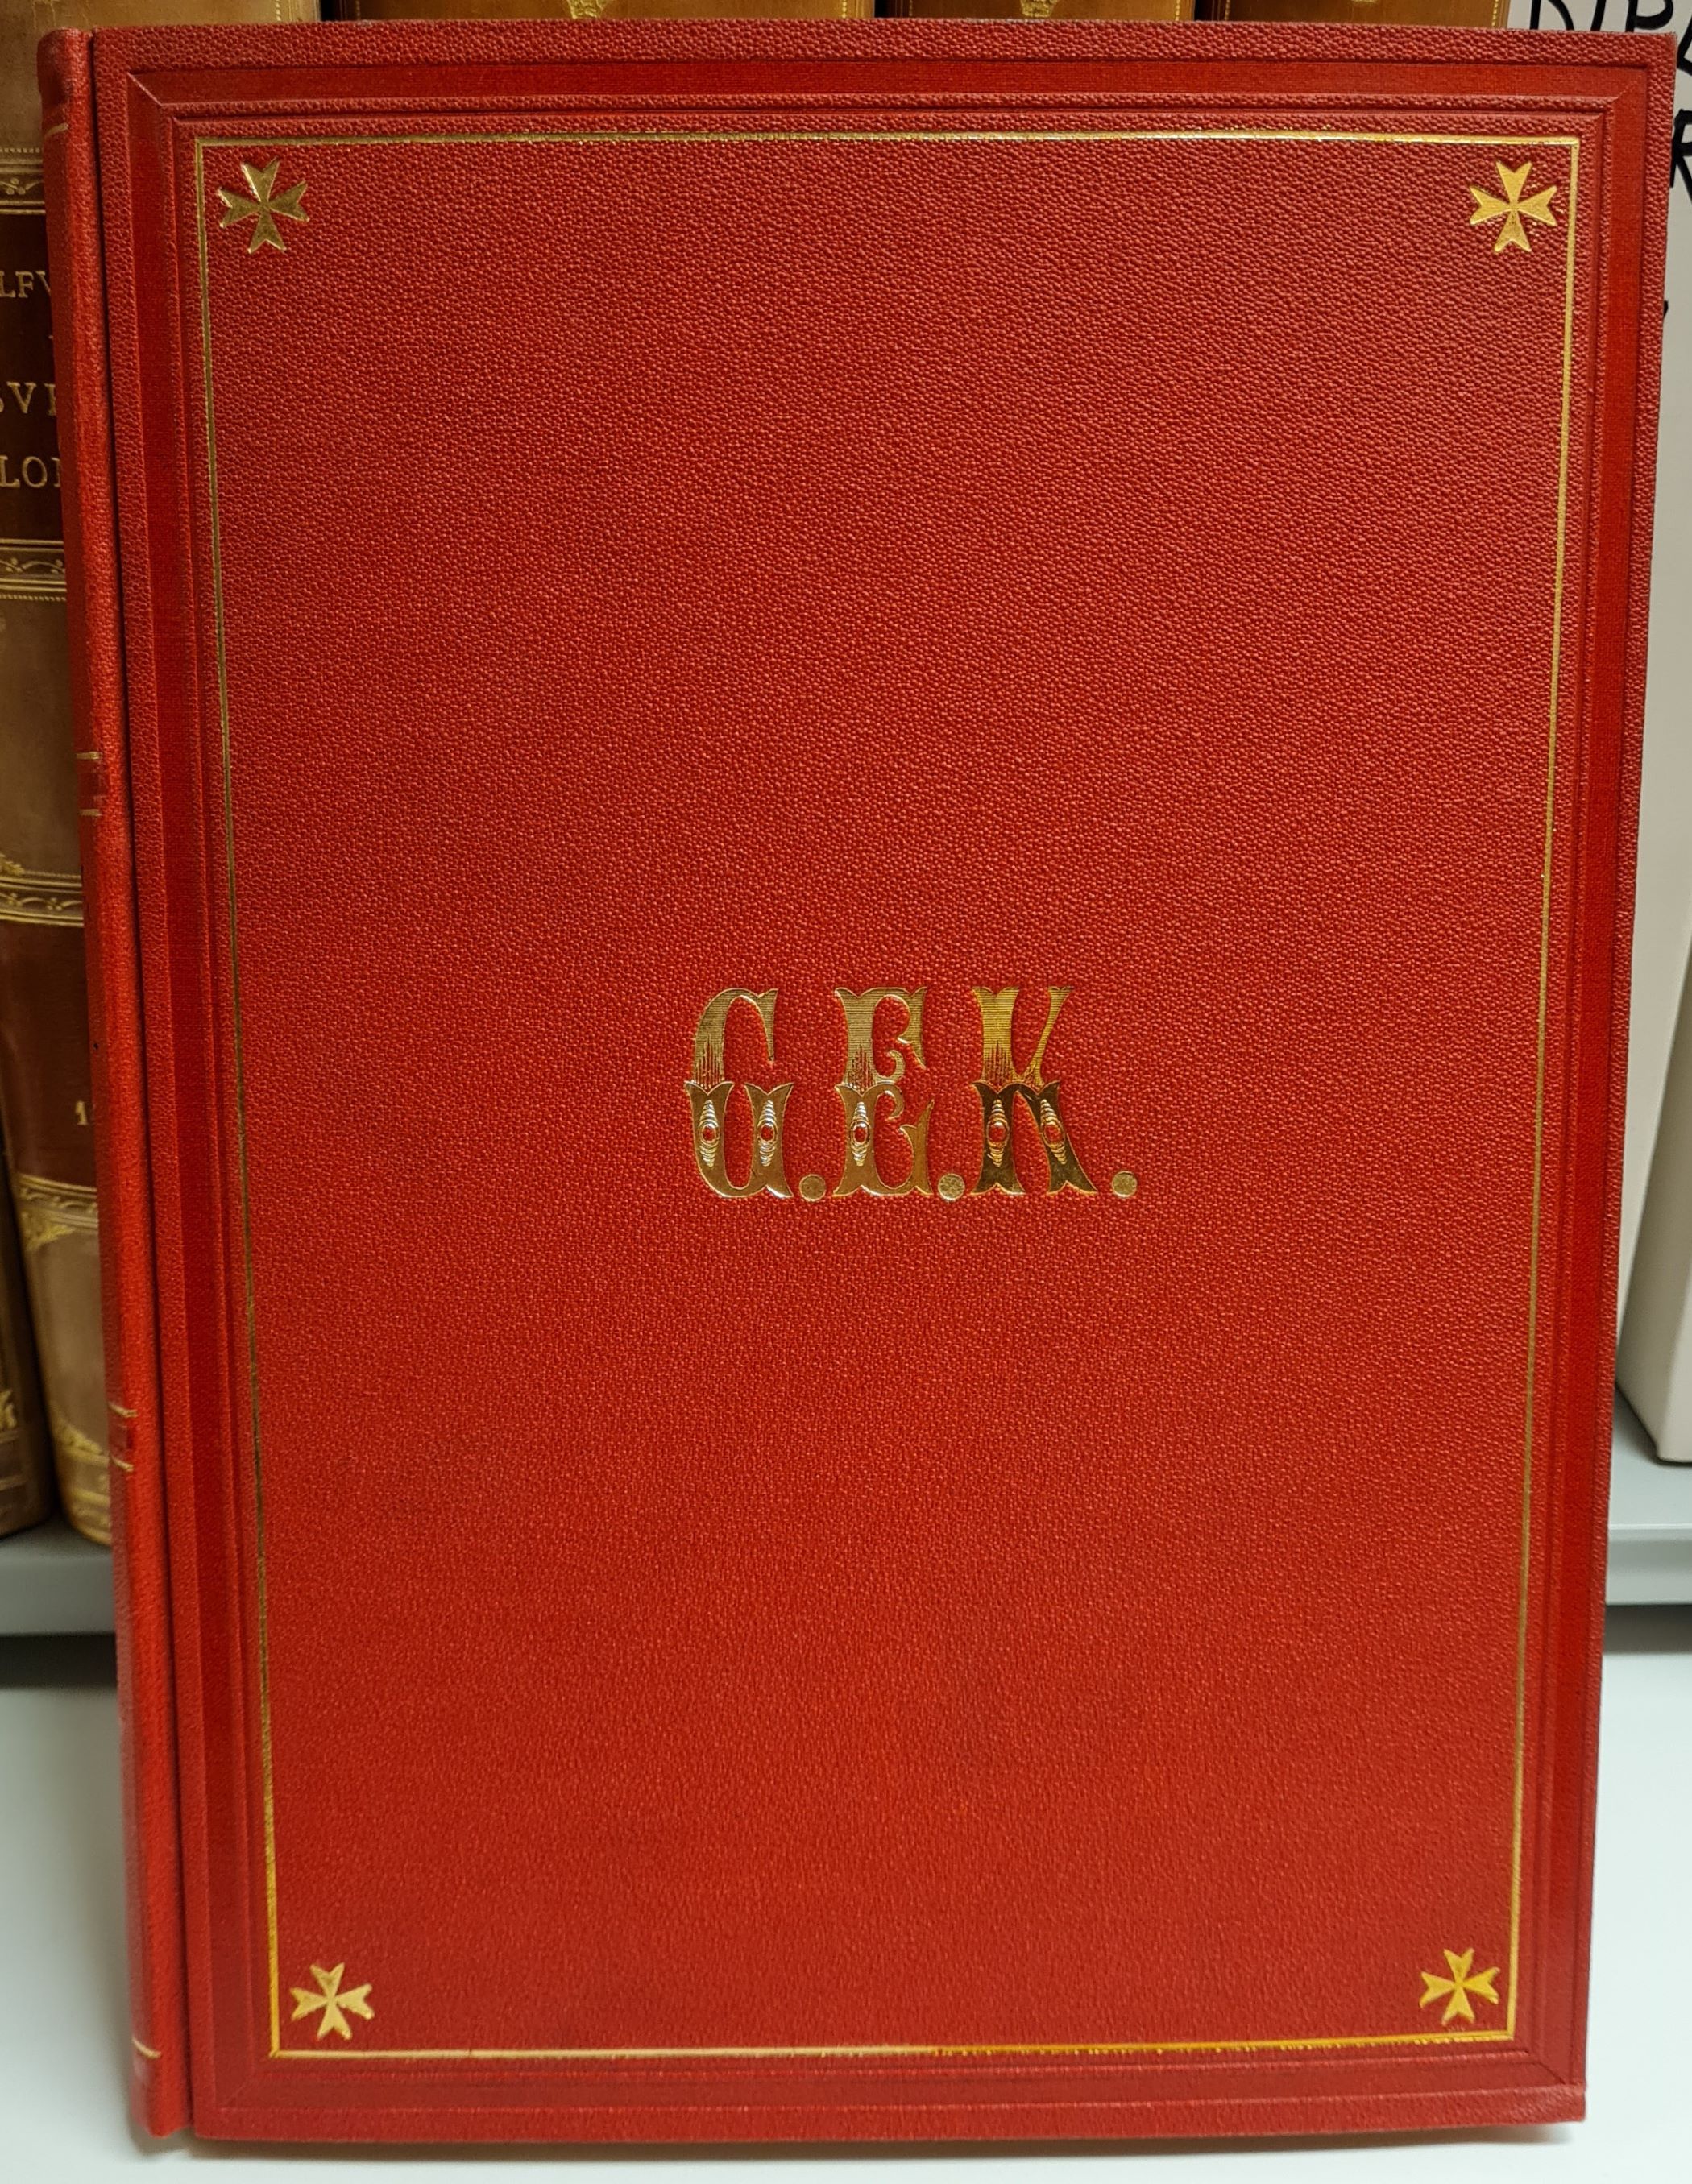 Färgfotografi av frampärmen på ett rött bokband med förgyllda detaljer, däribland fyra frimurarstjärnor och monogrammet G. E. K.